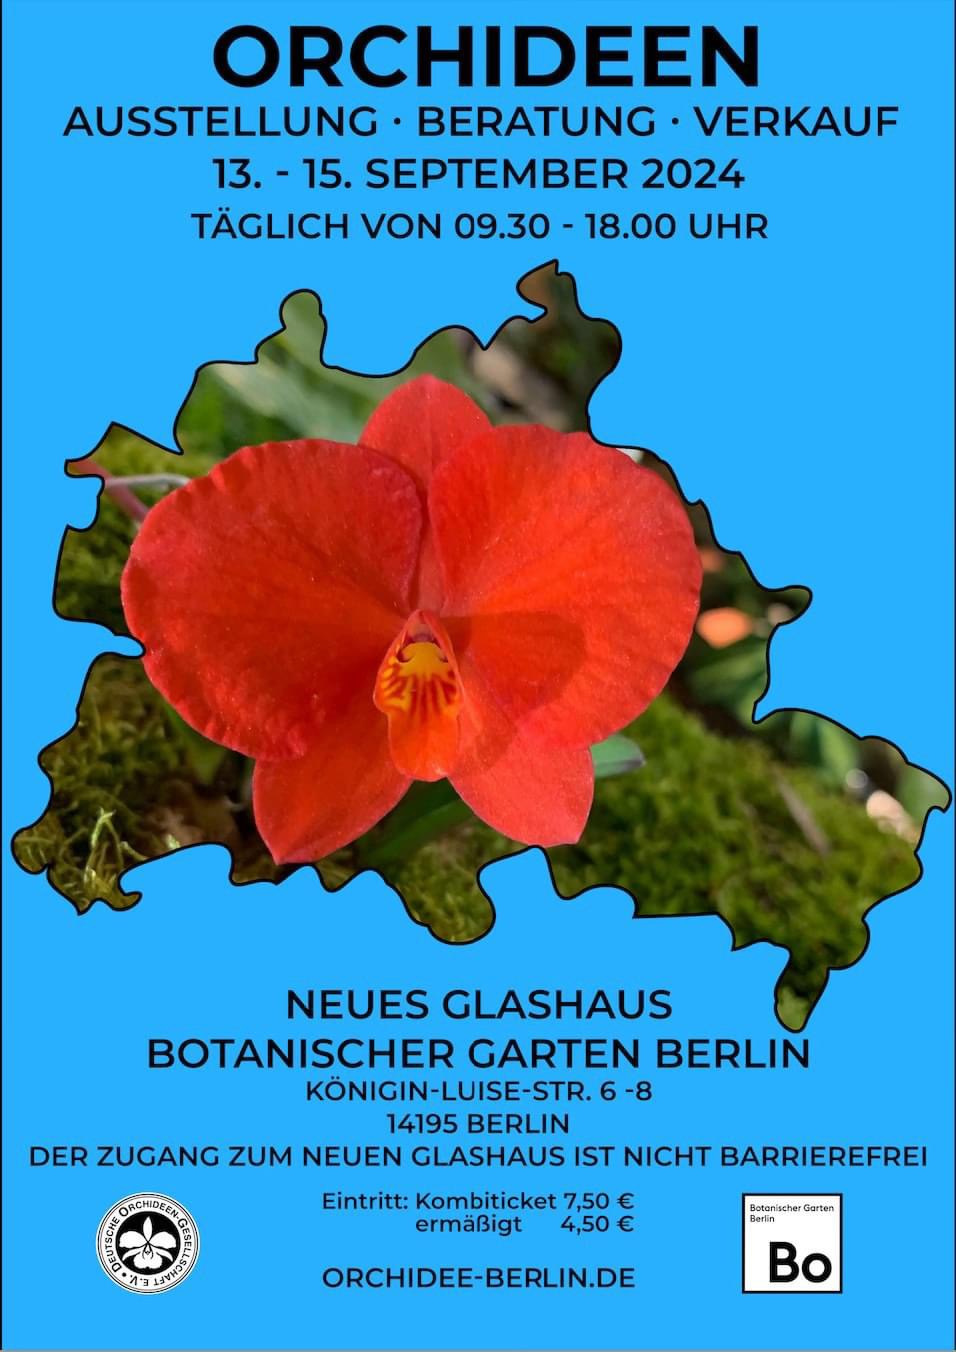 Orchideenausstellung Berlin